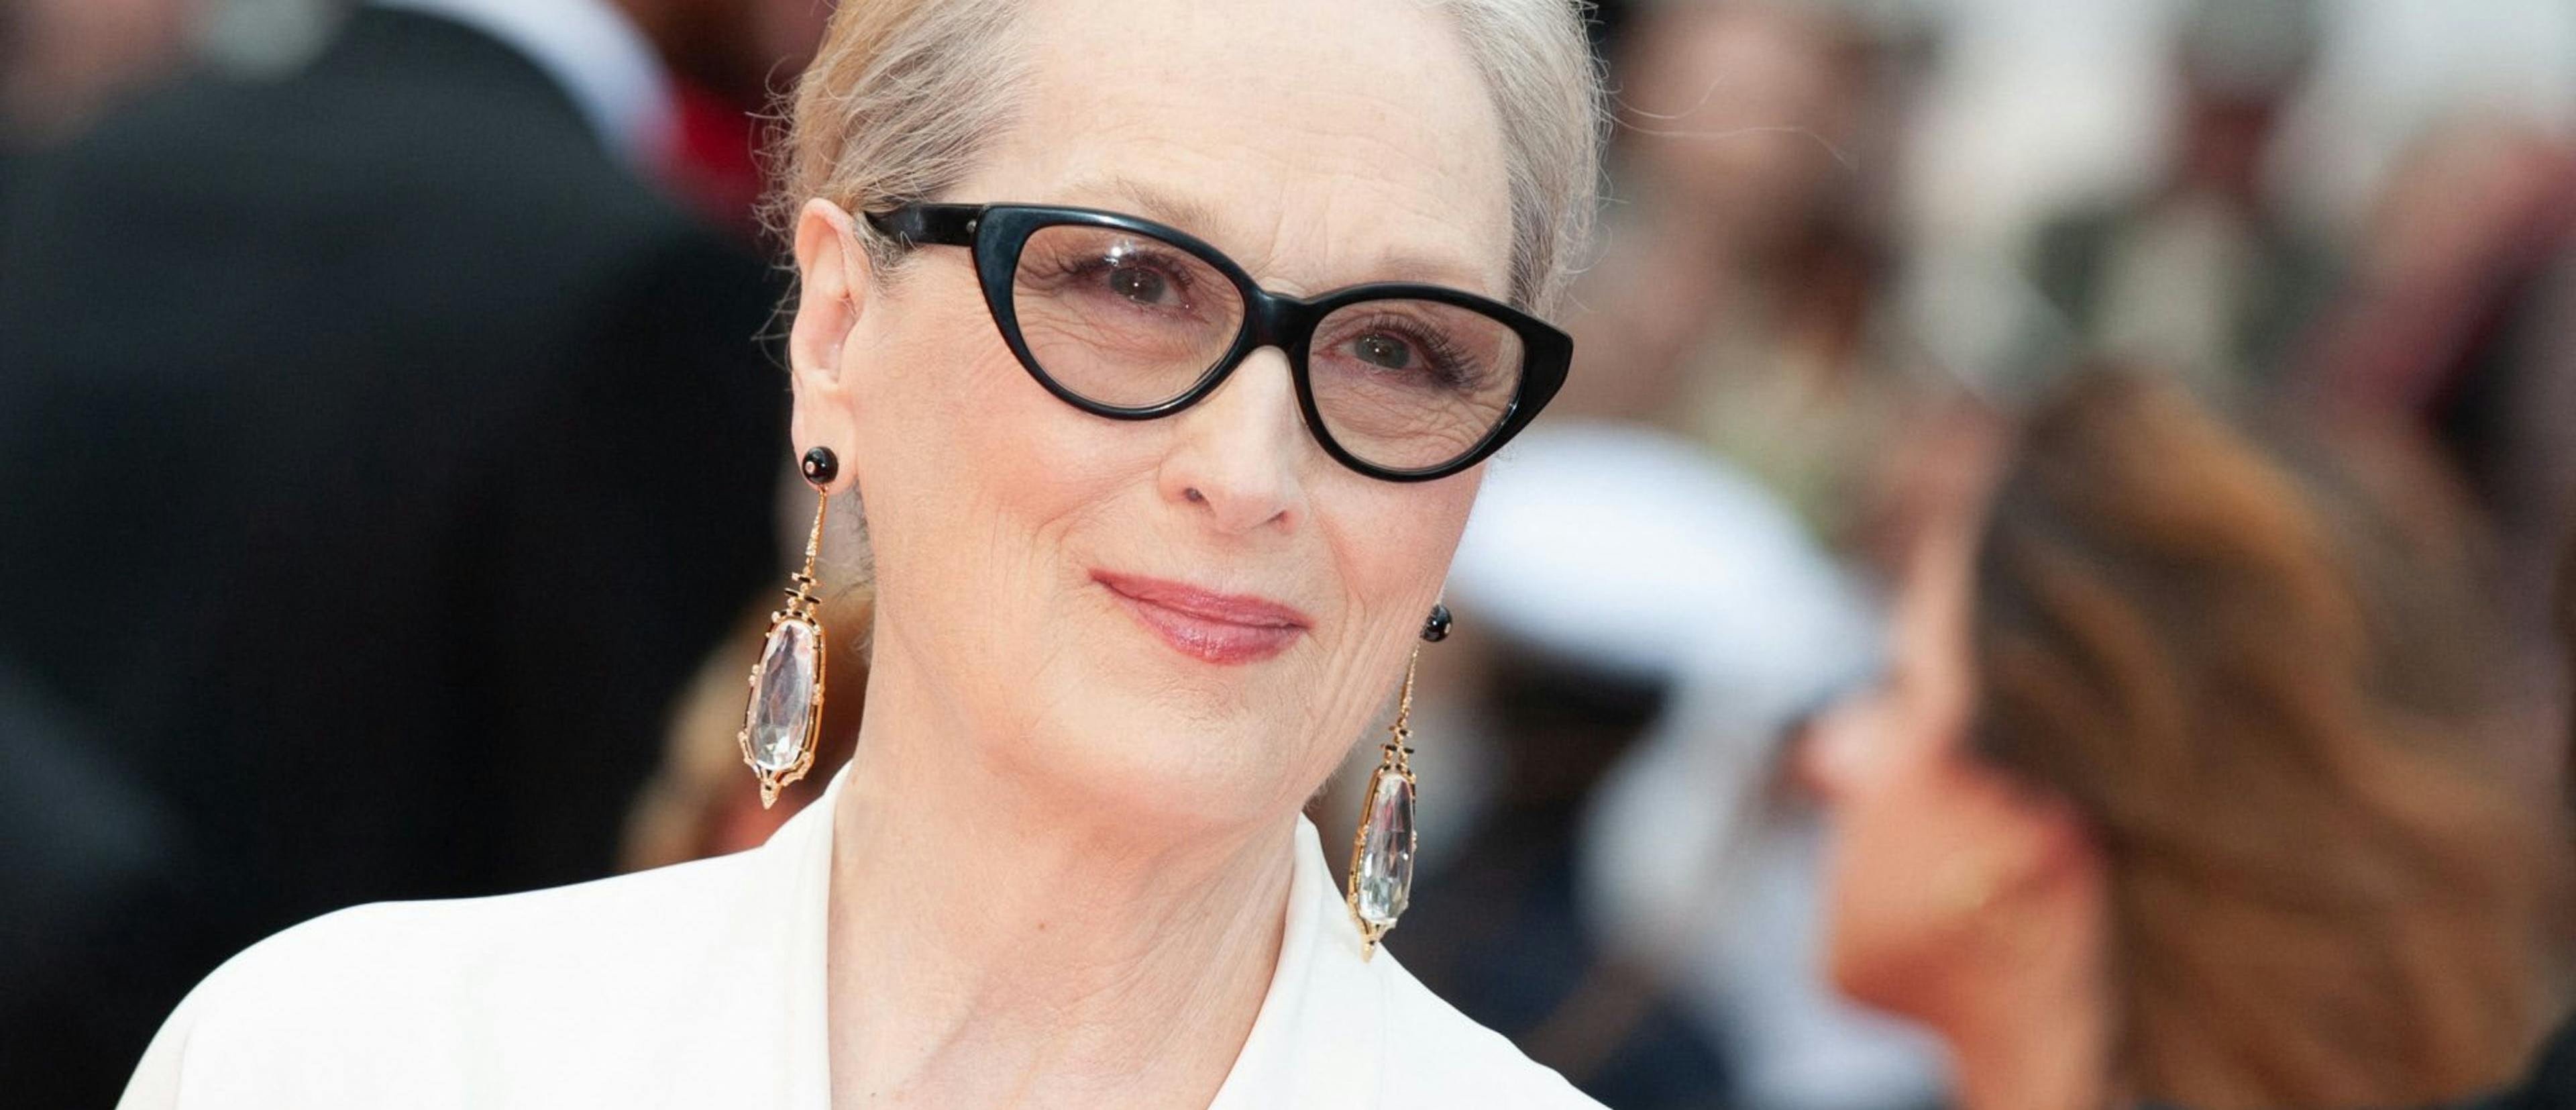 Meryl Streep posa en la alfombra roja del Festival de Cannes minutos antes de recibir la Palma de Oro en reconocimiento a su carrera